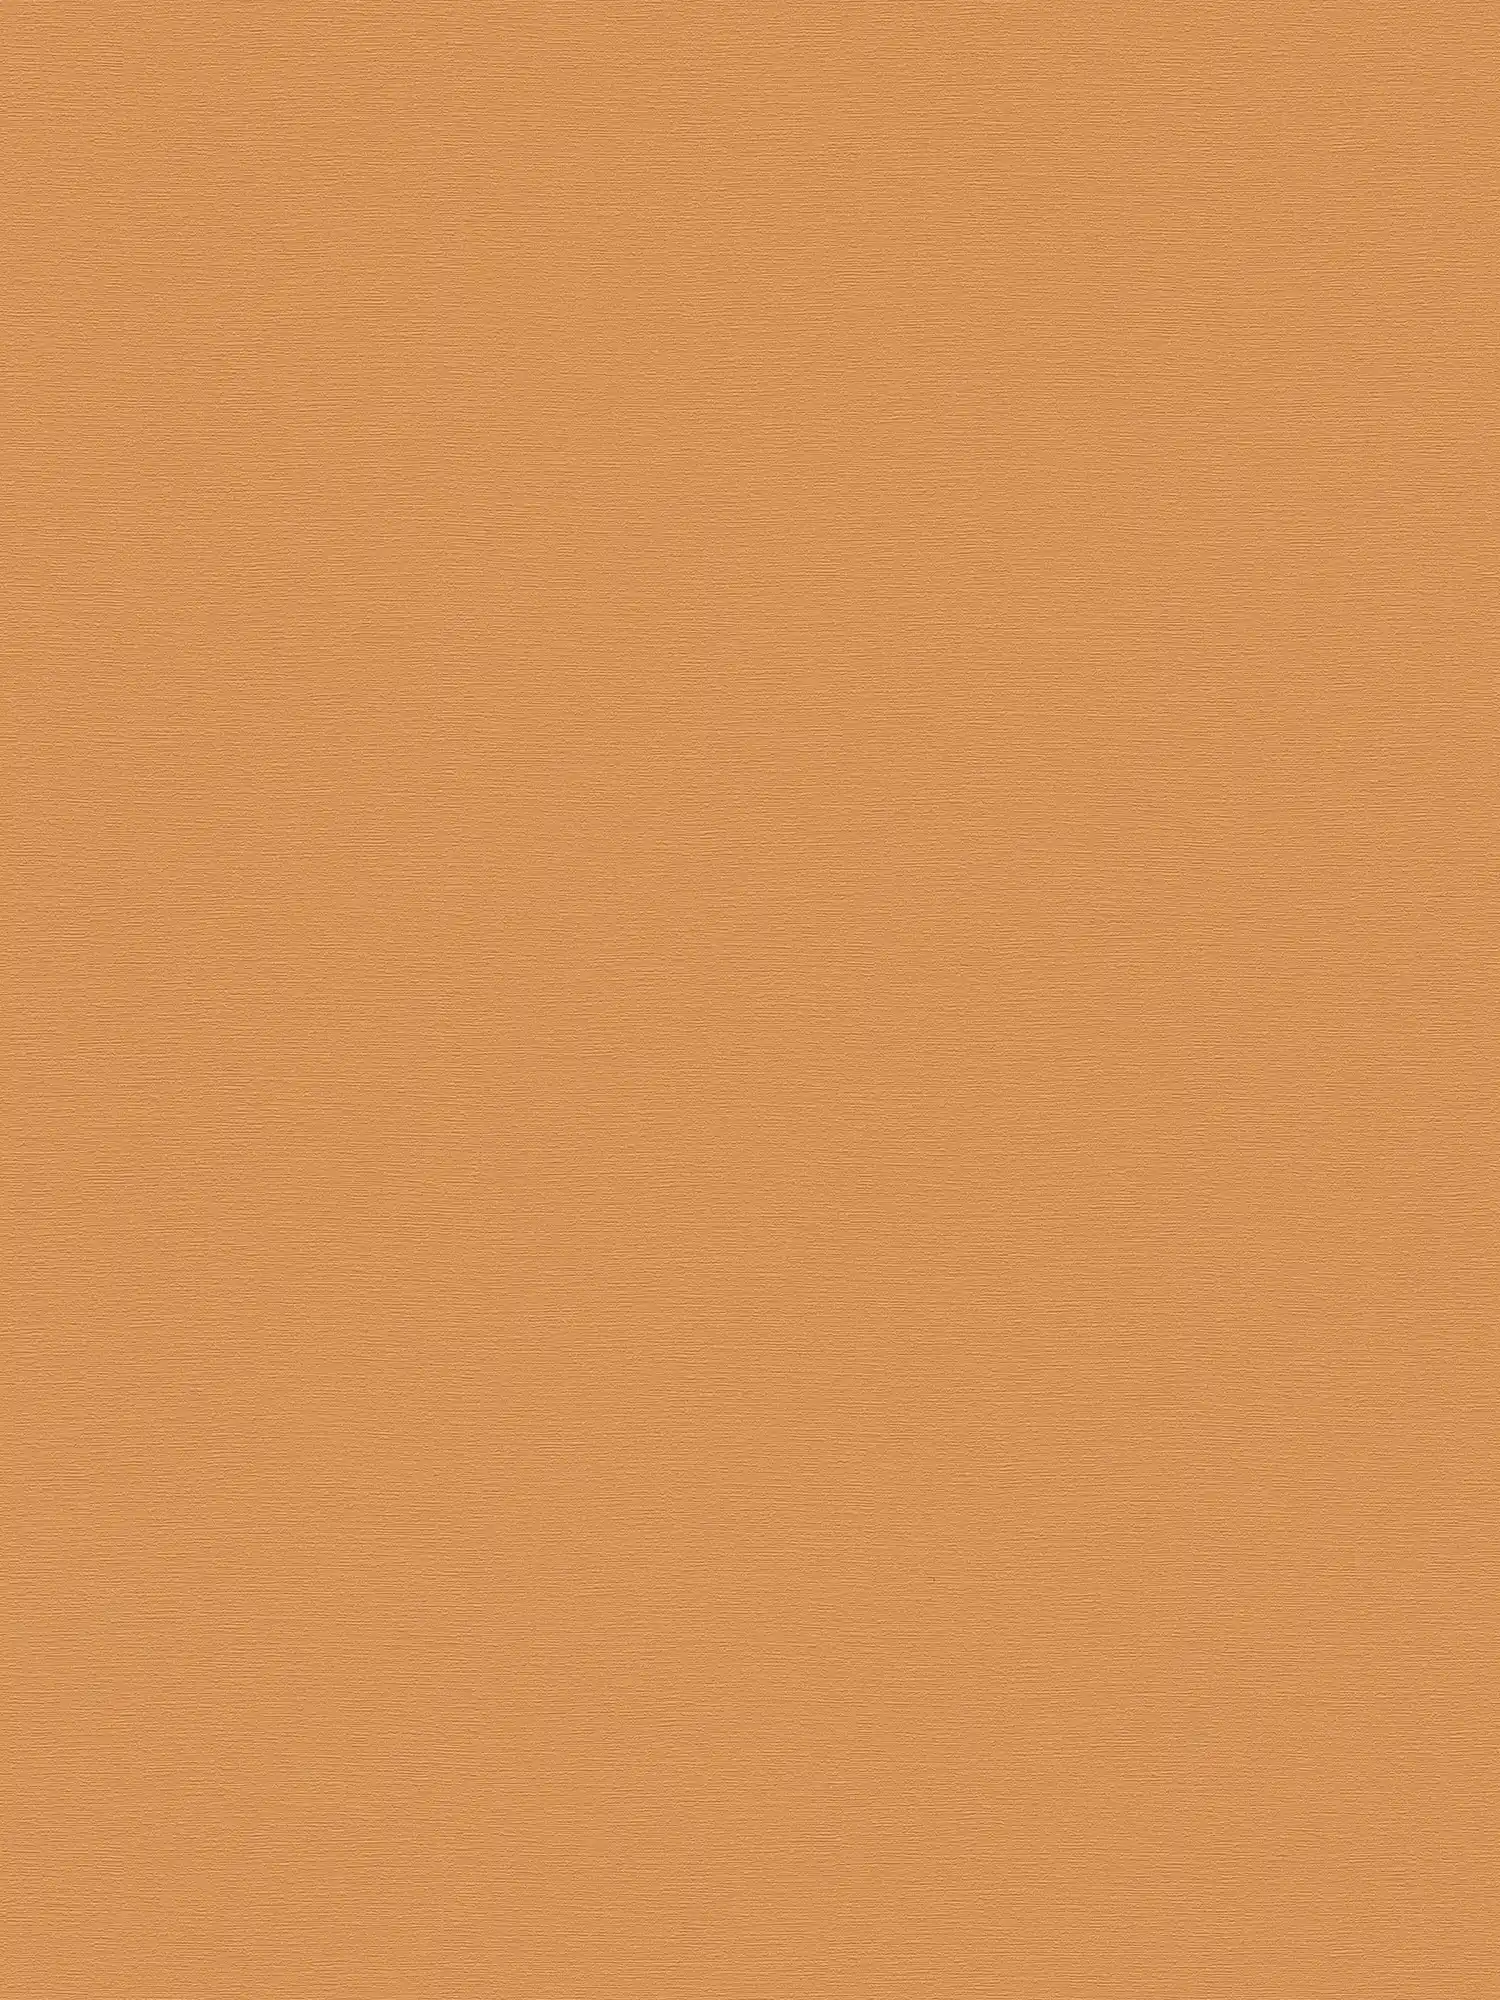 papier peint en papier intissé uni à texture fine - marron, jaune
